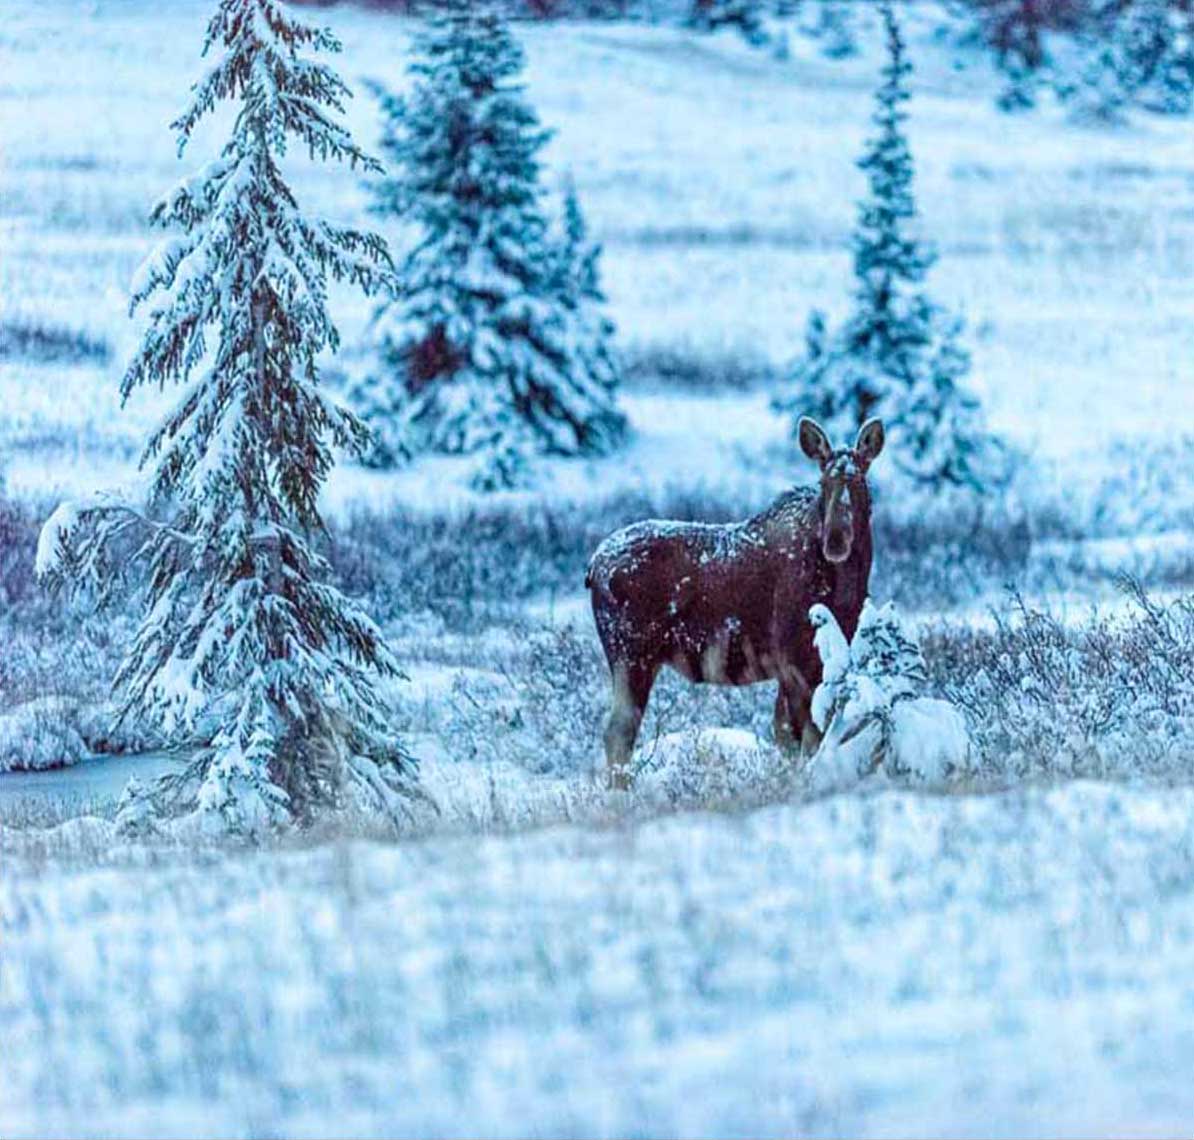 High Plains Drifter - Moose by Mark Ruckman